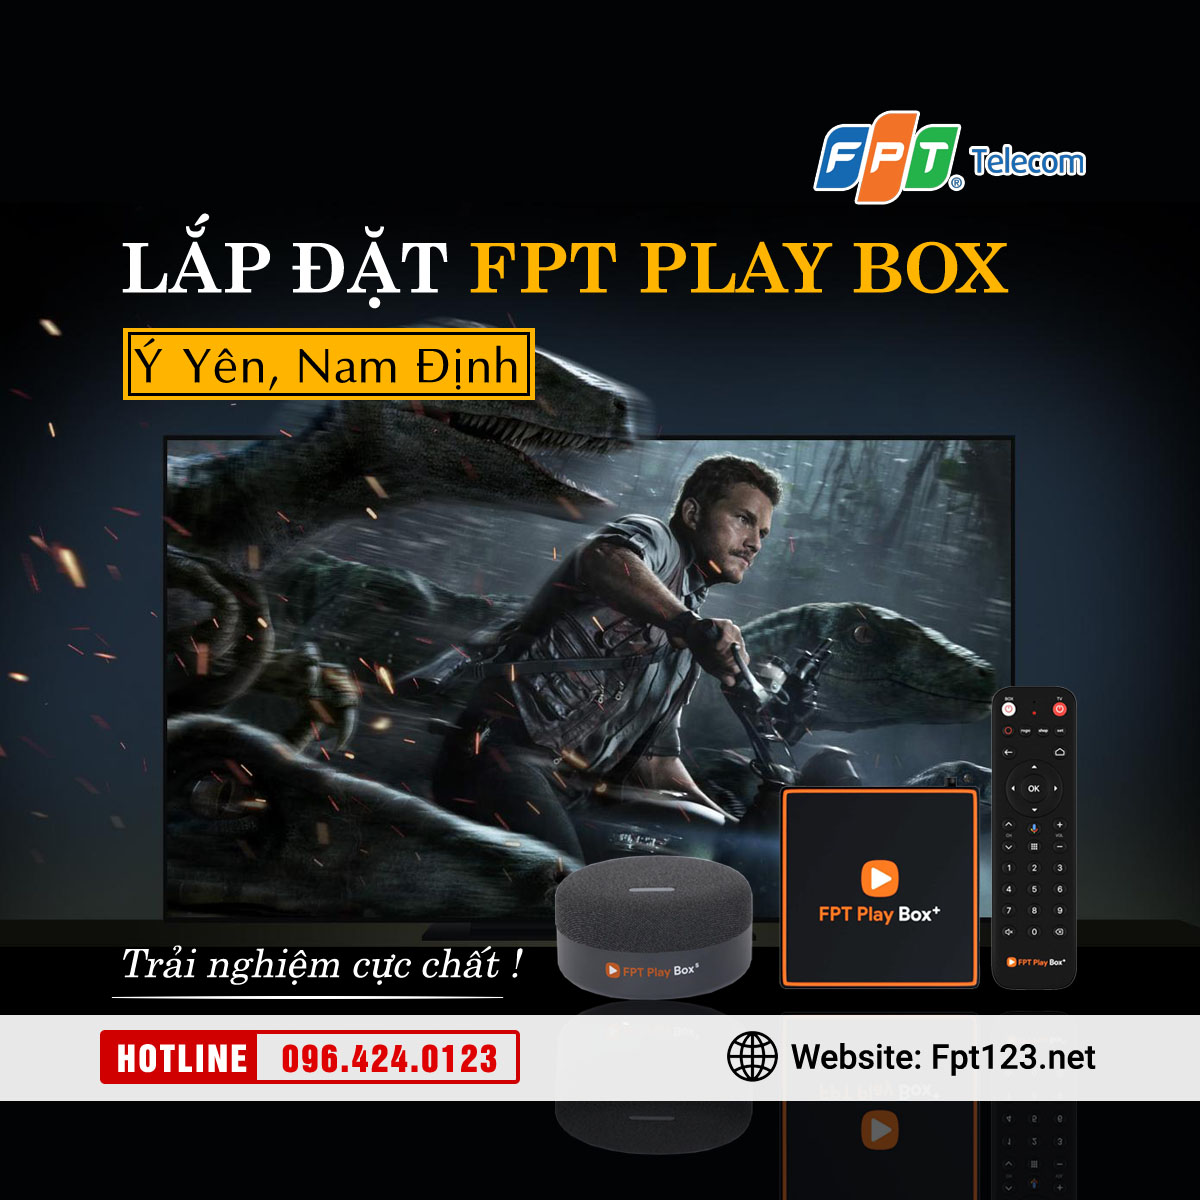 Lắp đặt FPT Play Box ở huyện Ý Yên, Nam Định